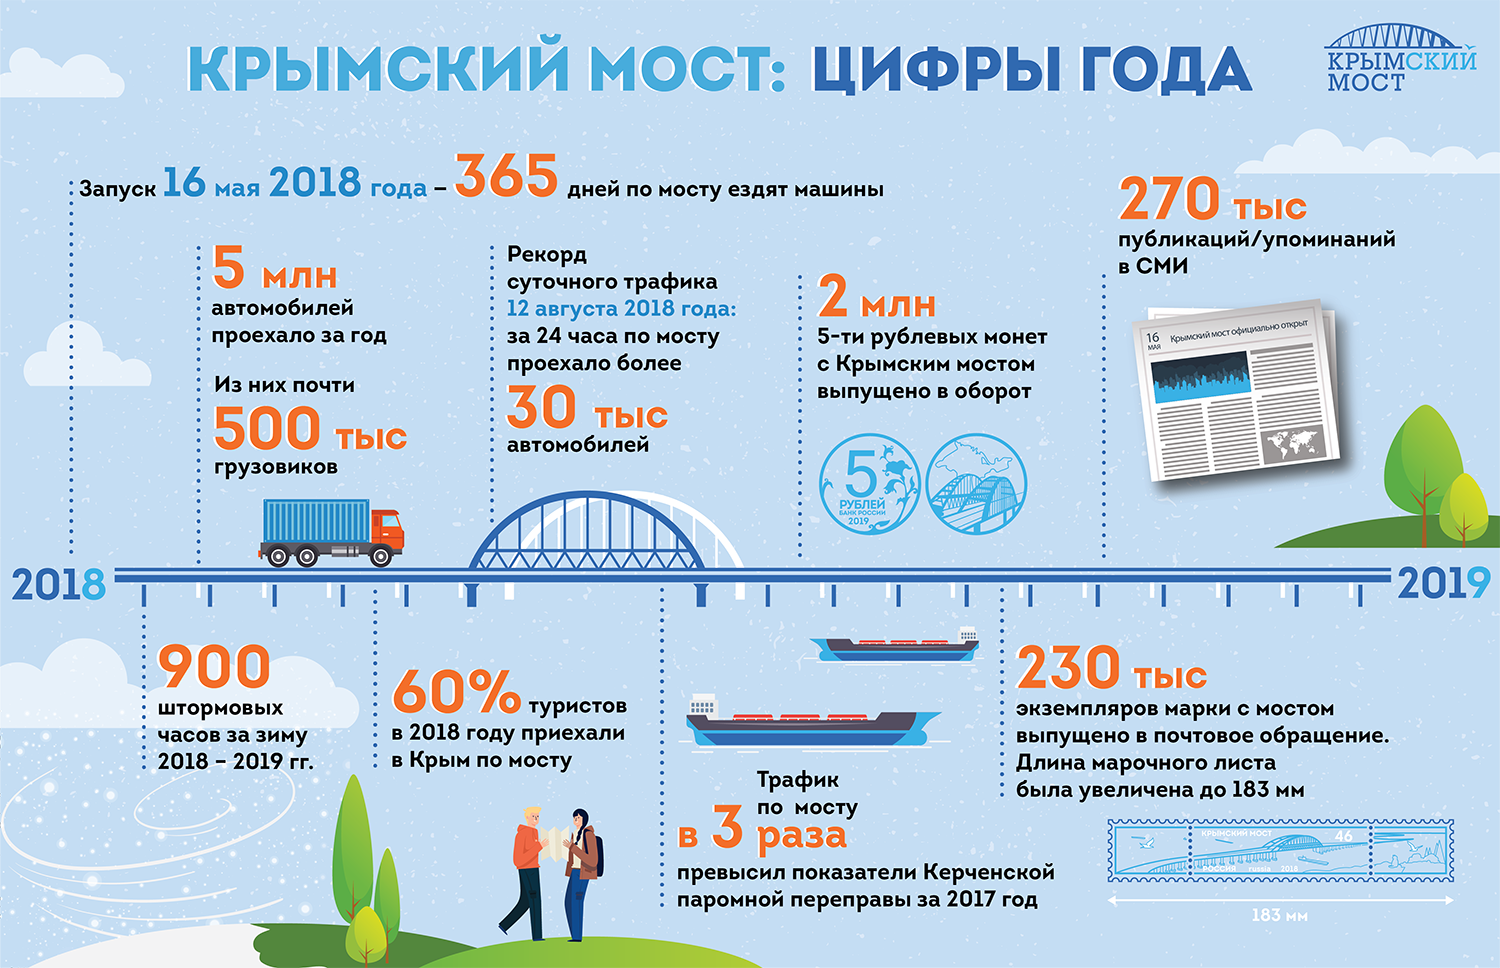 Крымский мост: цифры года